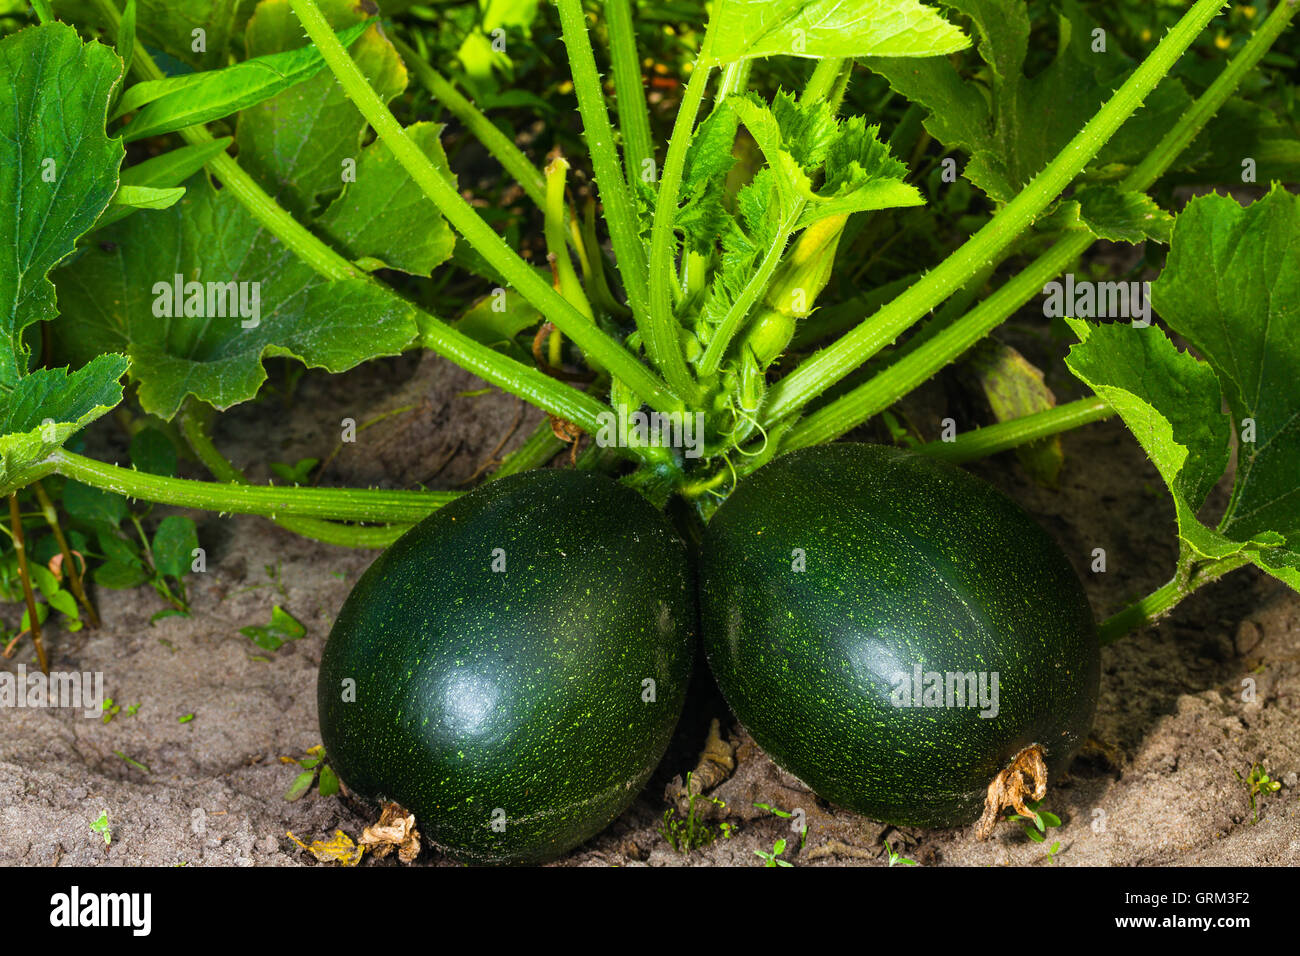 Rotondo verde midollo vegetale sul letto giardino Foto Stock